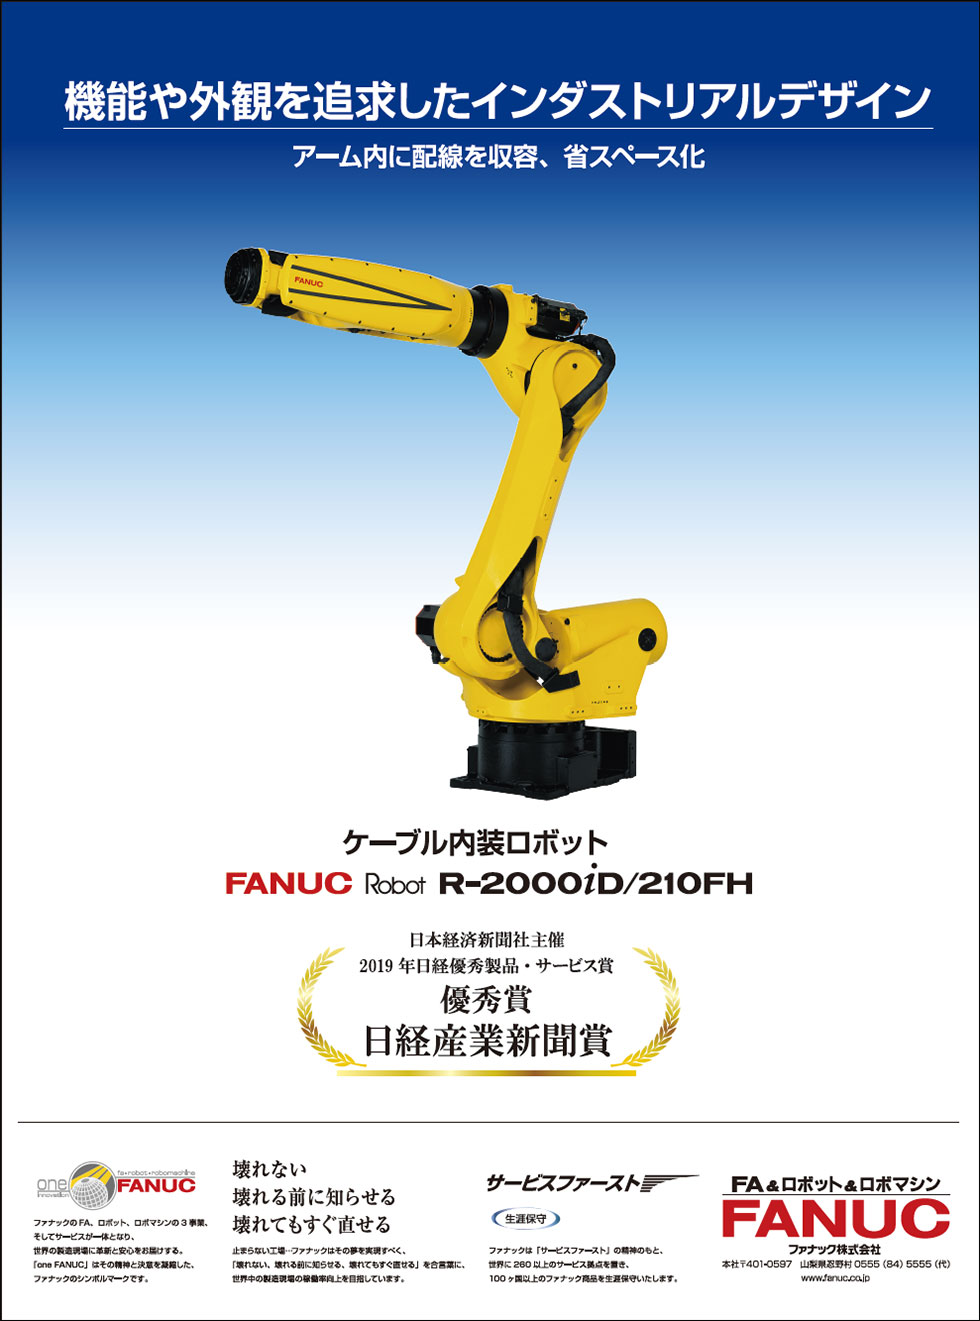 機能や外観を追及したインダストリアルデザイン FANUC Robot R-2000iD/210FH （2019年日経優秀製品・サービス賞優秀賞日経産業新聞賞受賞）